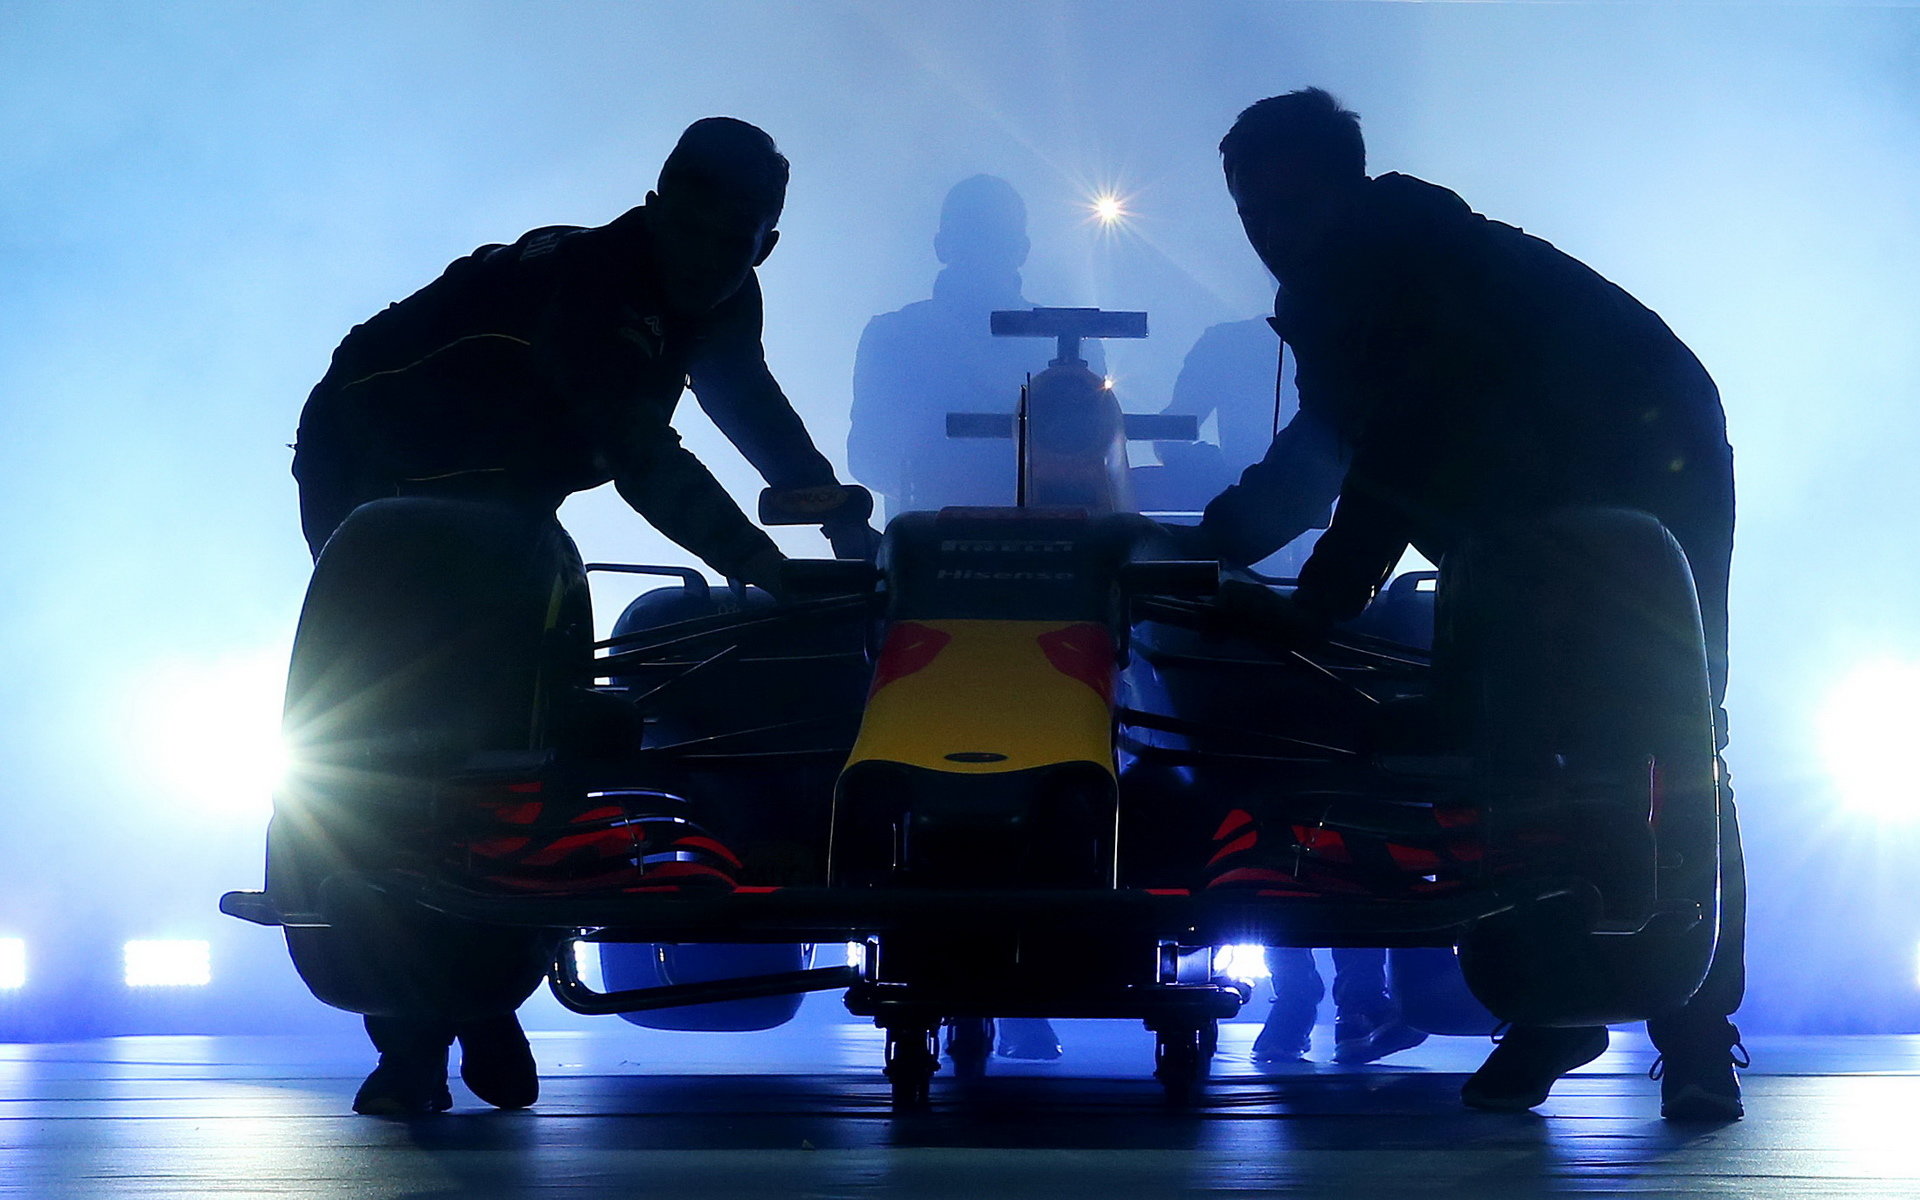 Prezentace nového zbarvení vozu Red Bull pro sezonu 2016